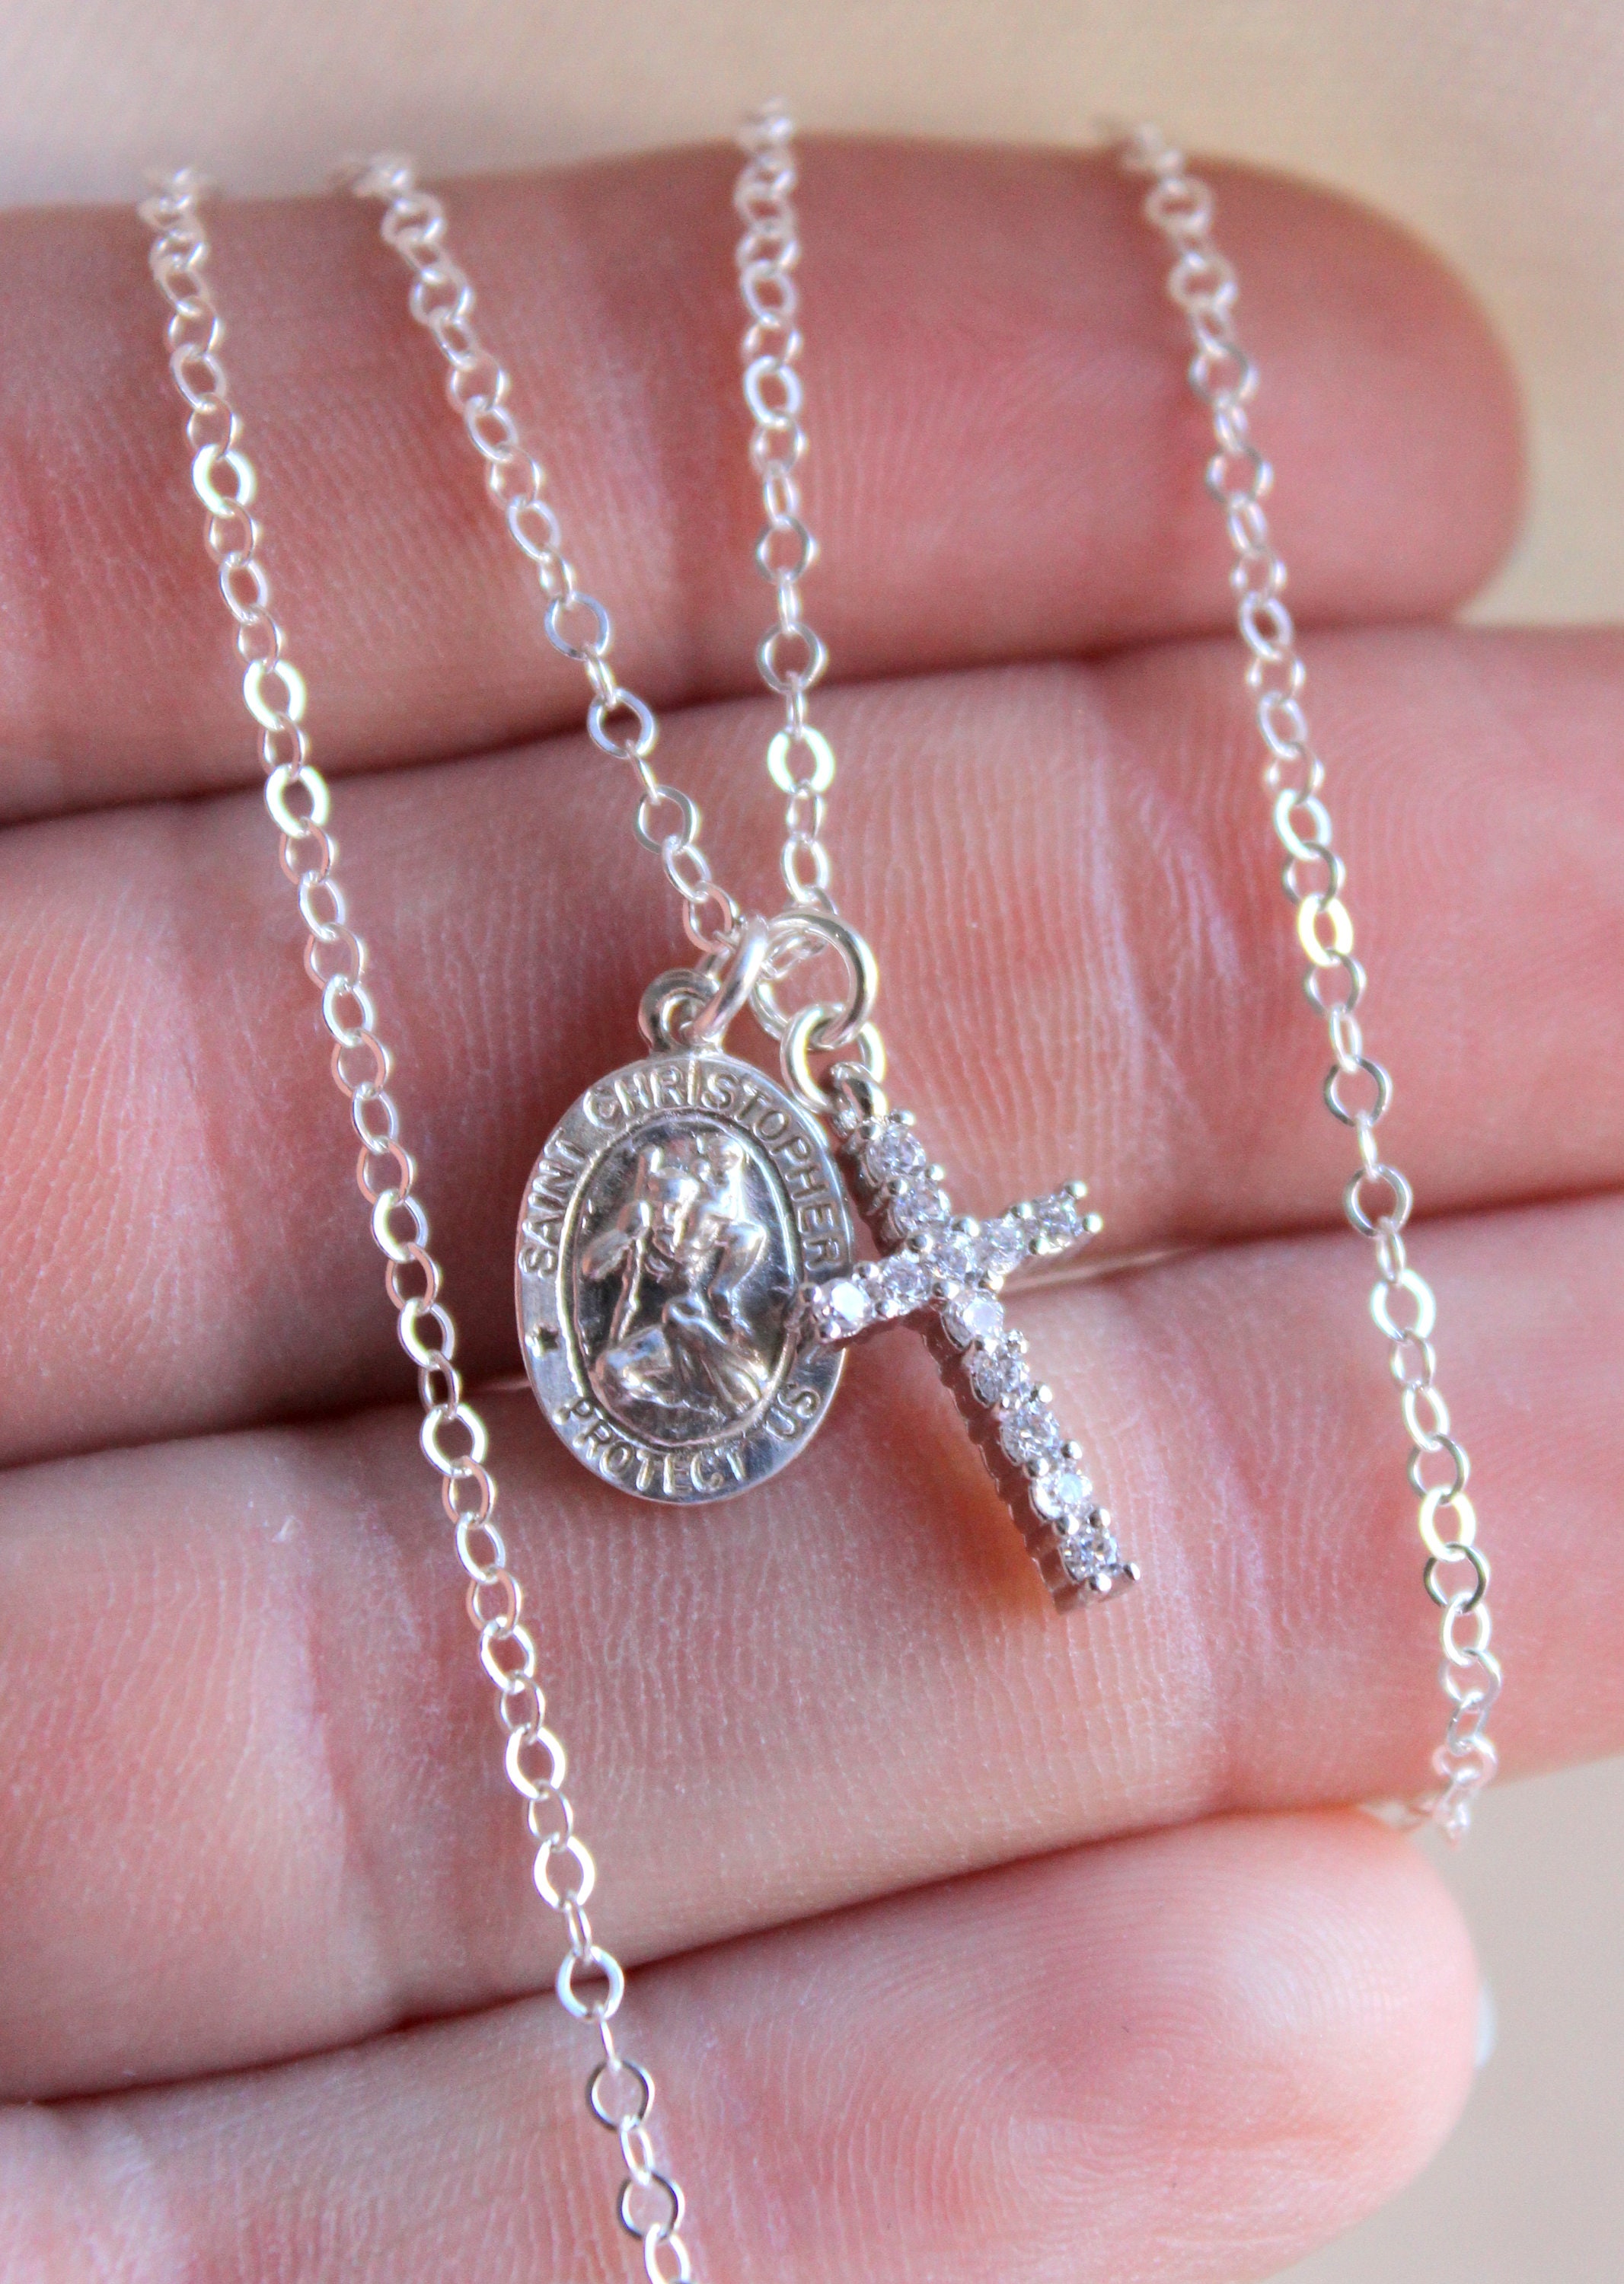 Mini Saint Christopher Pendant Necklace - Fame Accessories